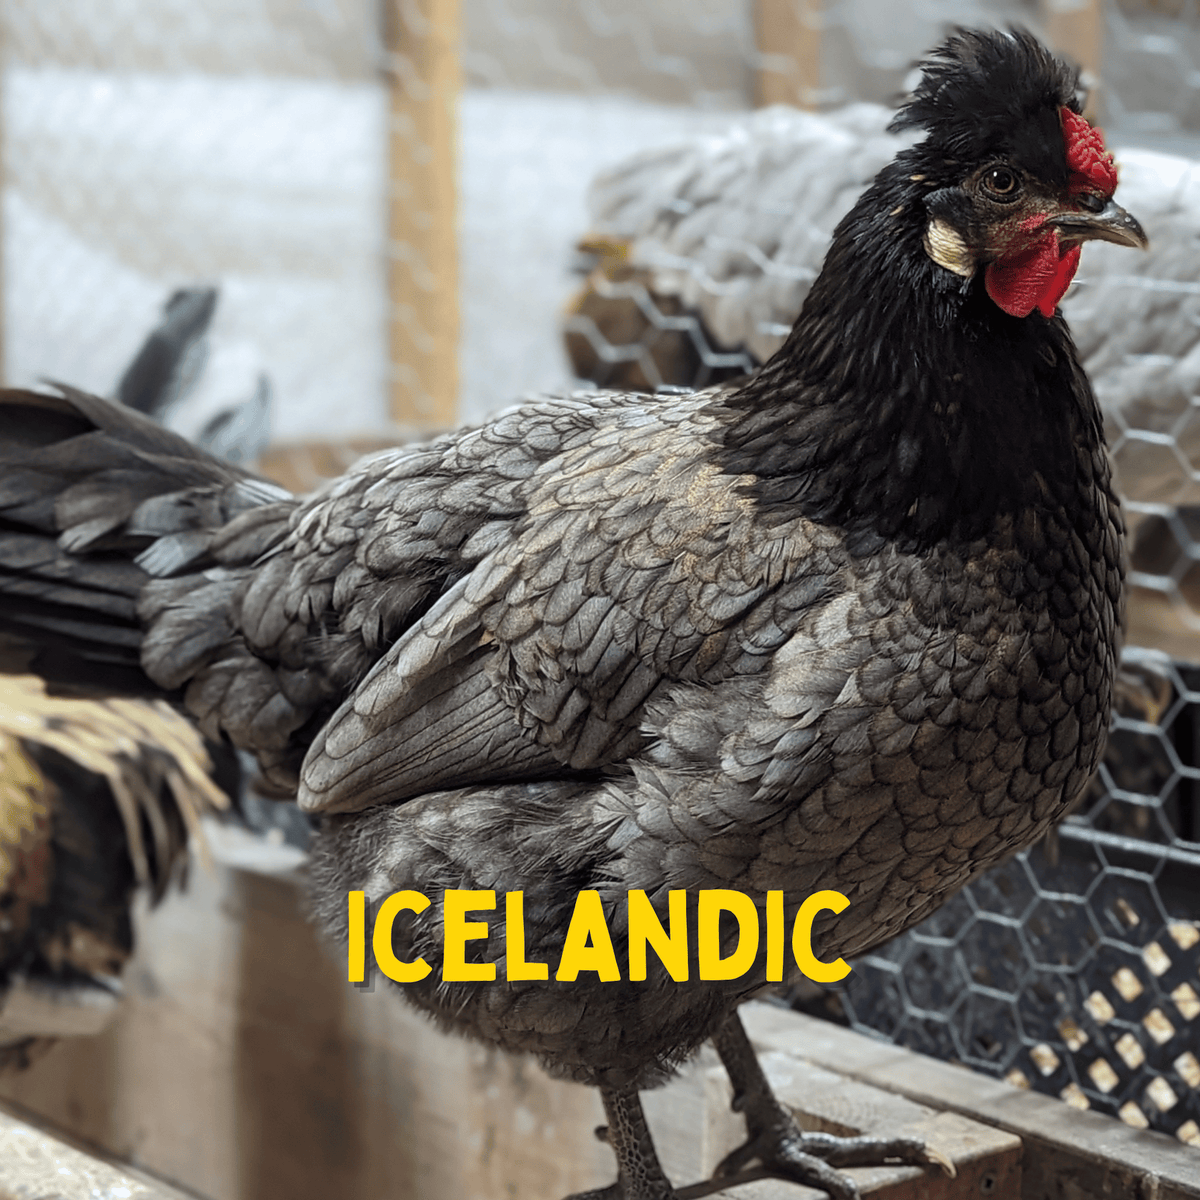 One Dozen Icelandic Chicken Hatching Eggs